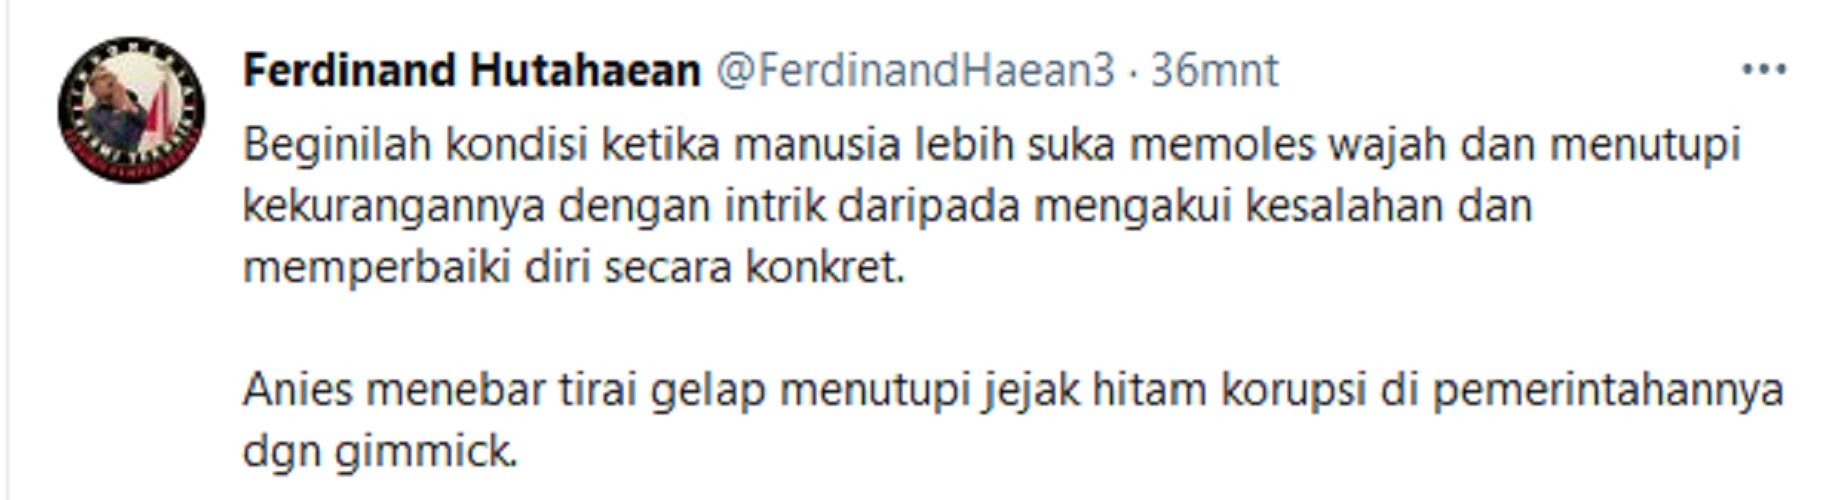 Bambang Widjojanto Disebut Pimpin KPK ala Anies Baswedan, Ferdinand: Tirai Gelap Tutupi Jejak Korupsi